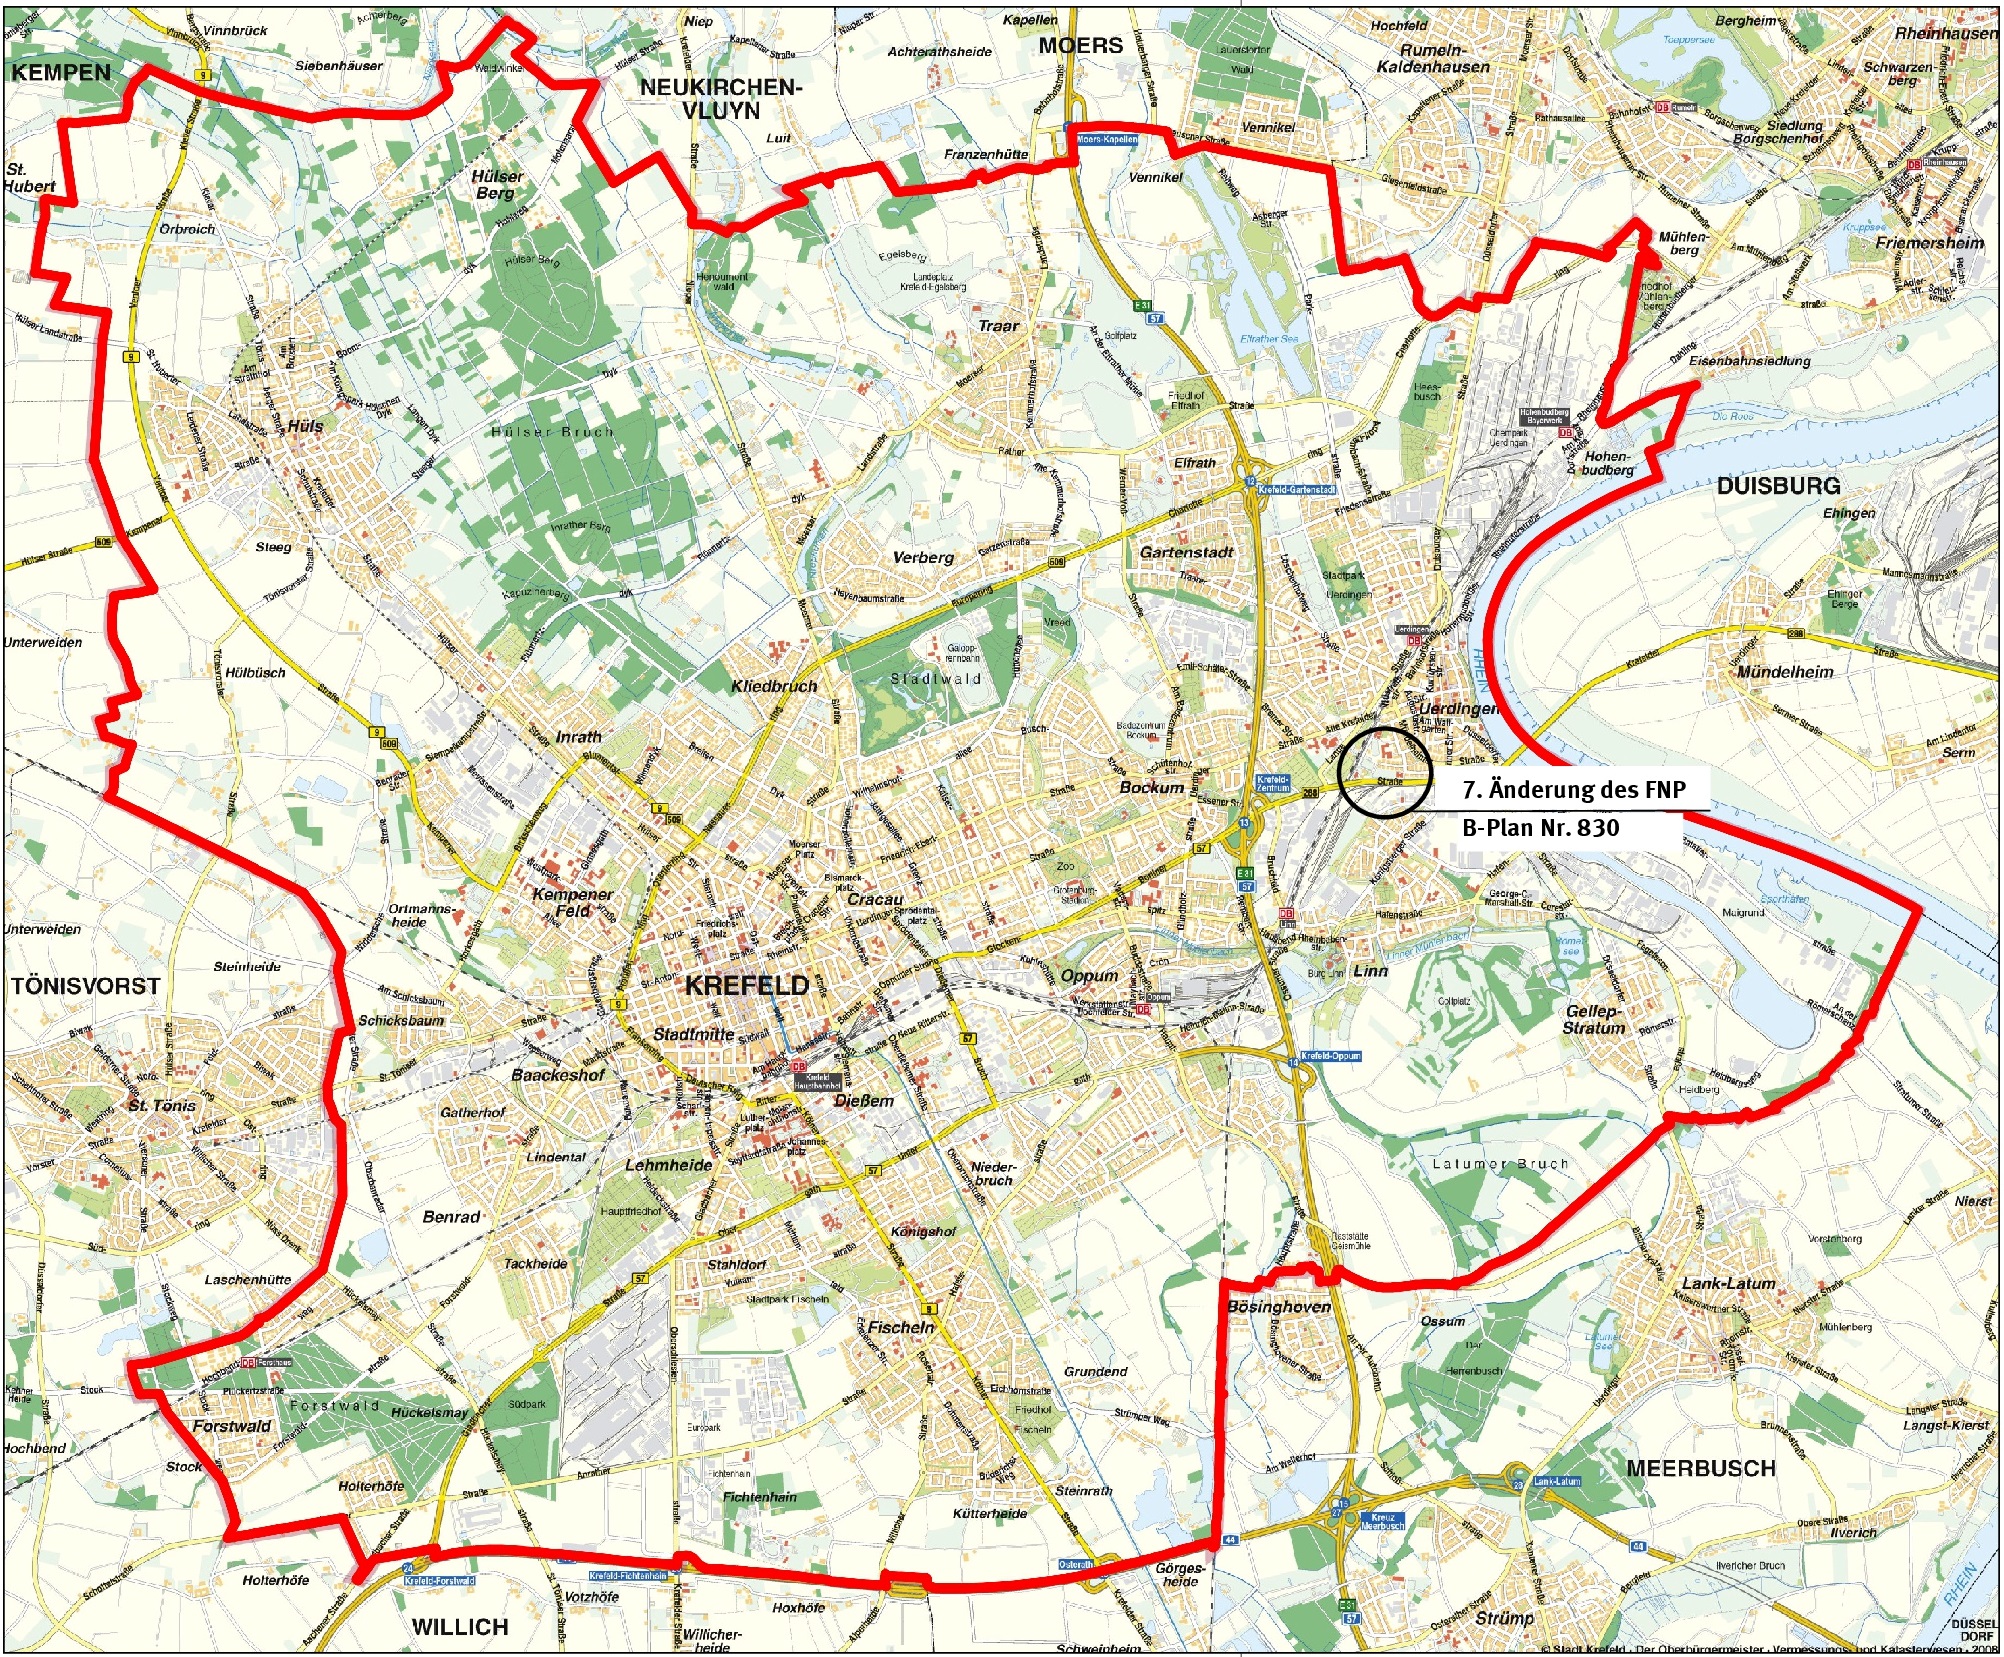 7. Änderung des Flächennutzungsplanes in der Stadtkarte